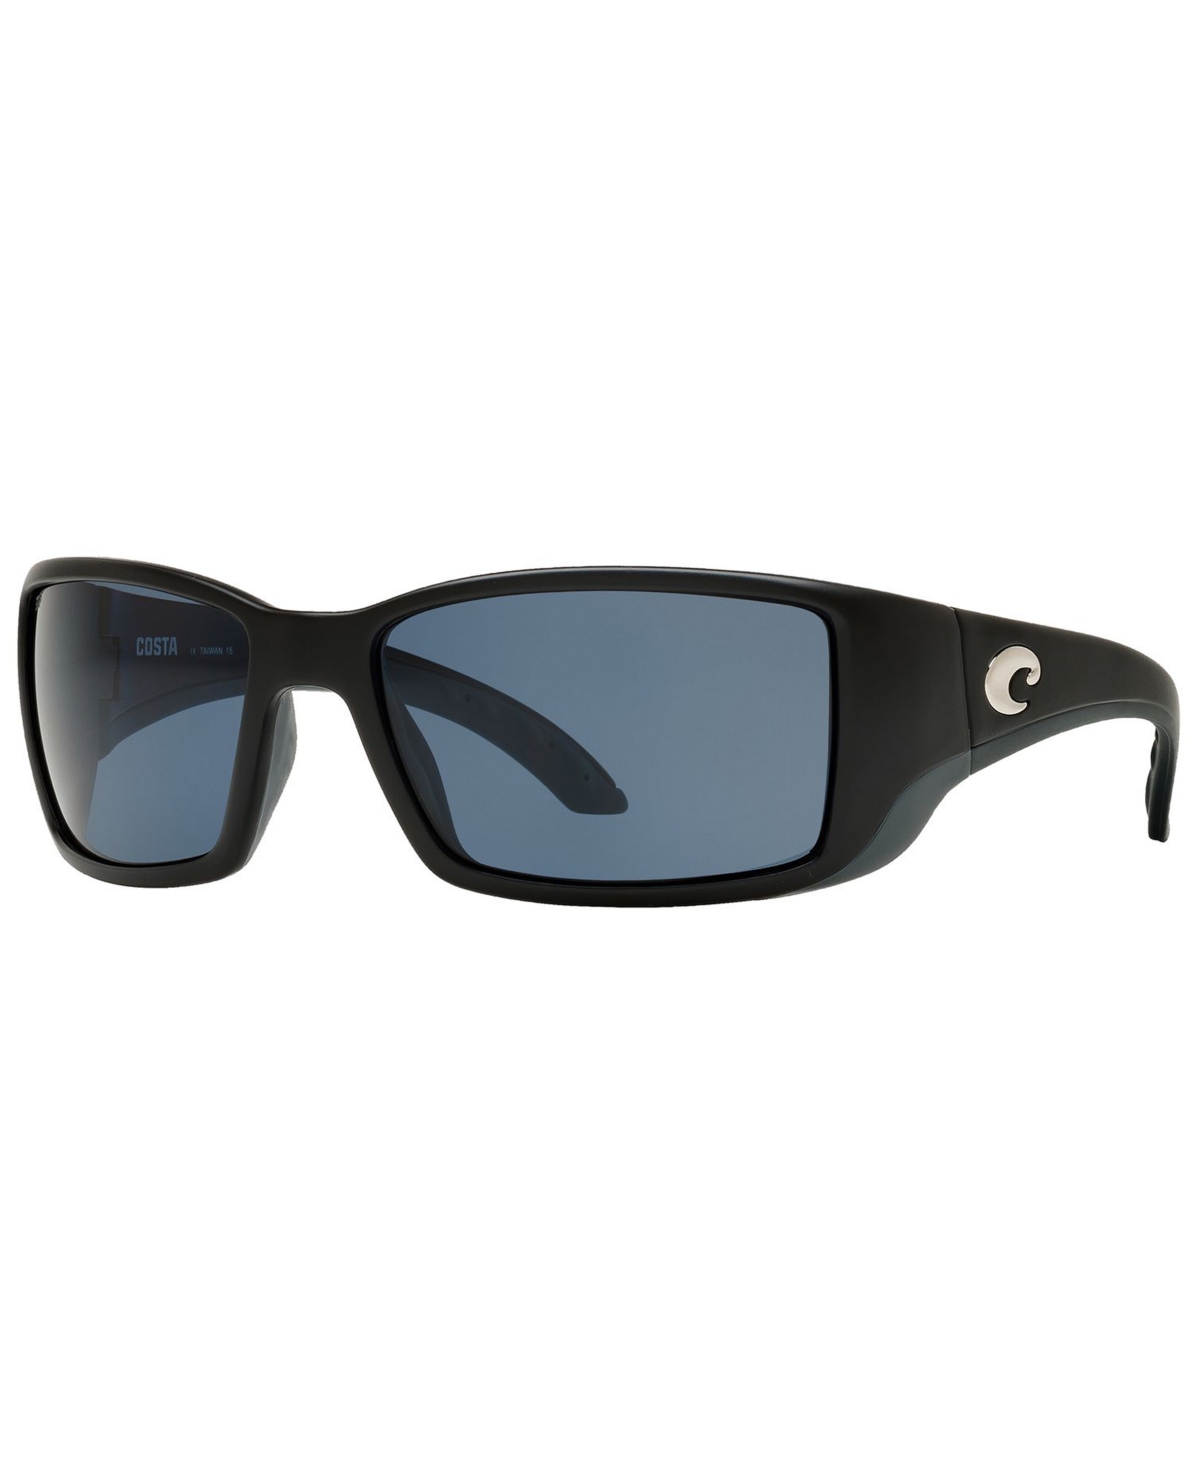 Costa Del Mar Polarized Sunglasses, Blackfin Polarized 60p In Black Matte,grey